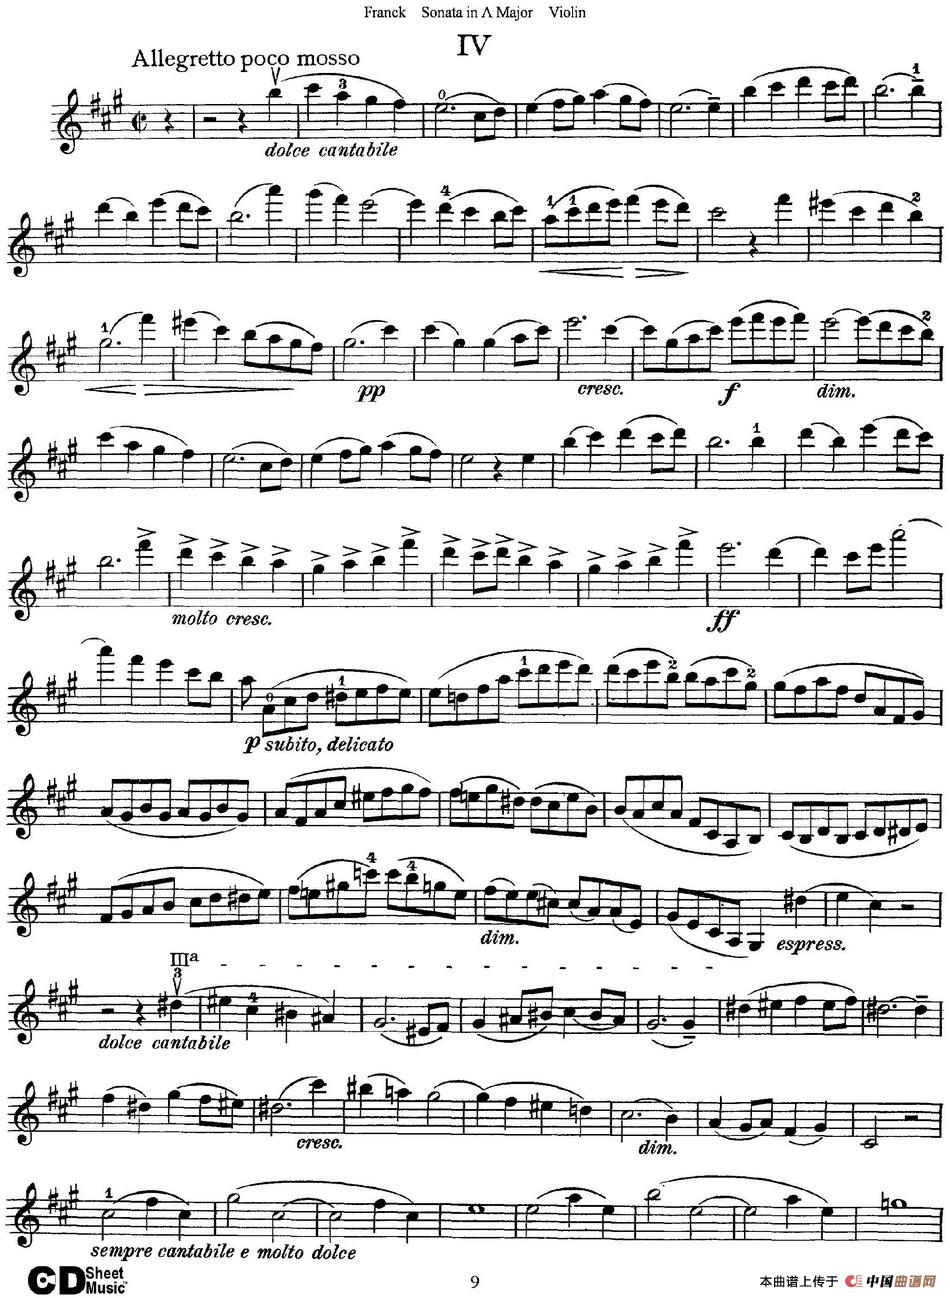 Franck Sonata in A Major